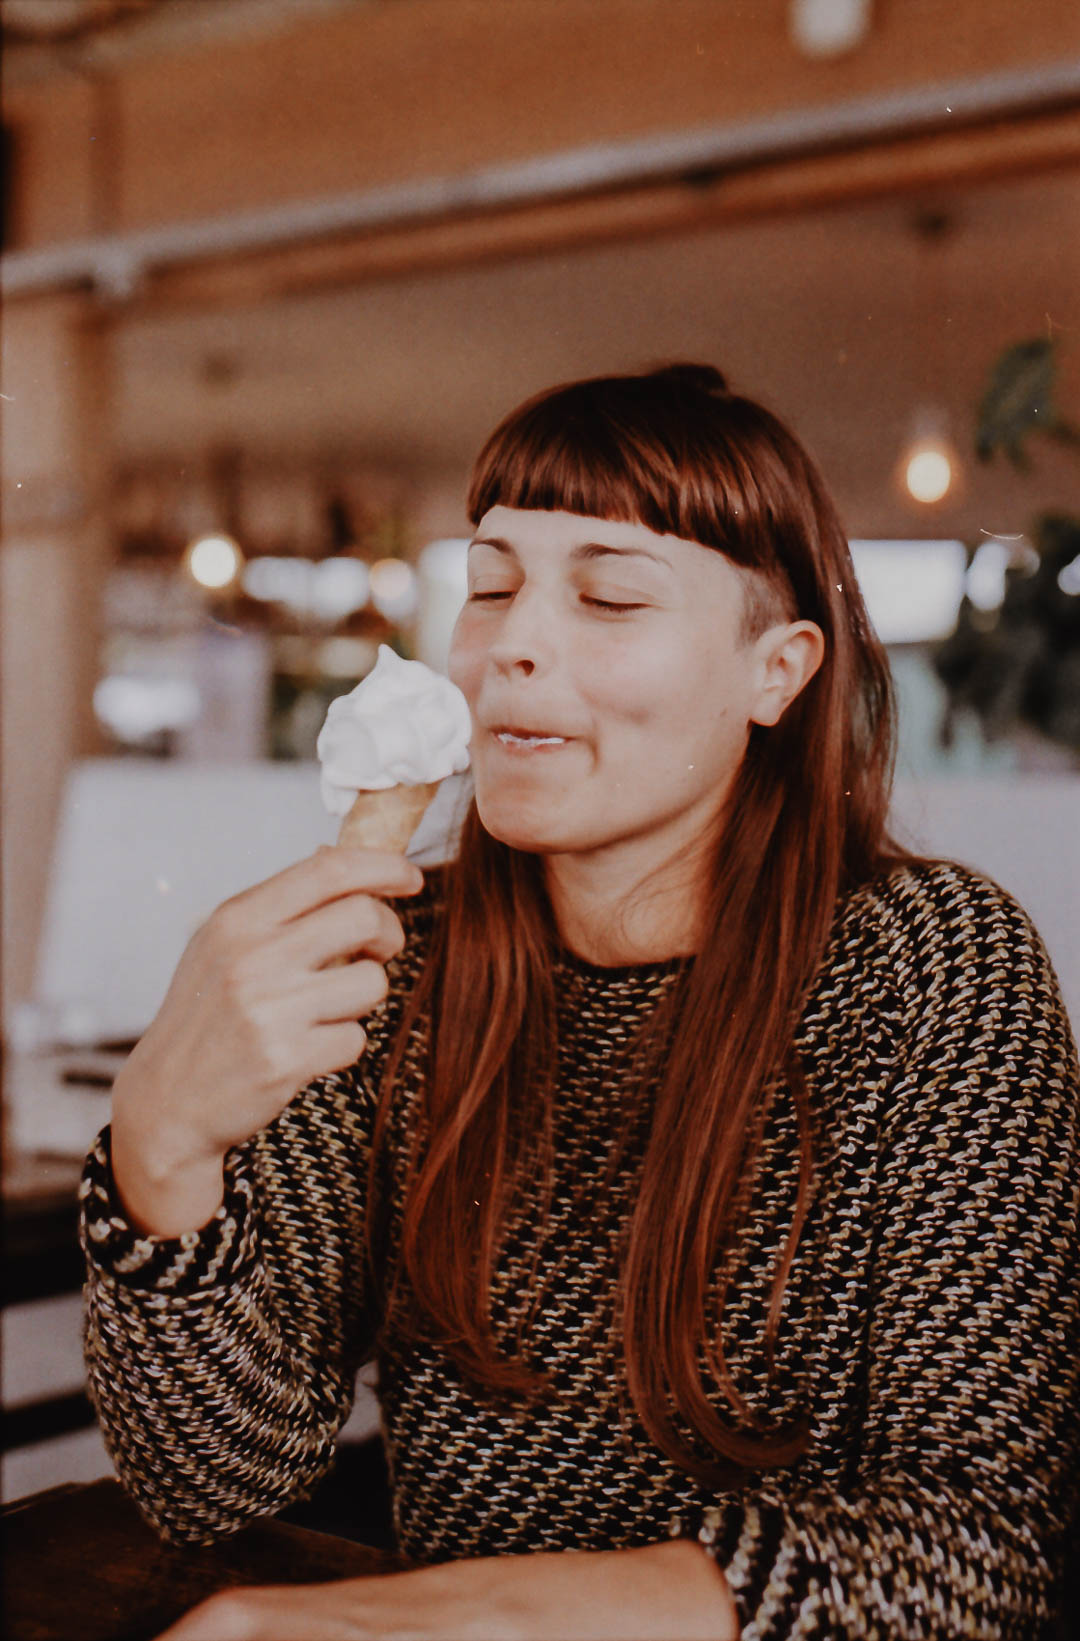 Frau isst ein Eis